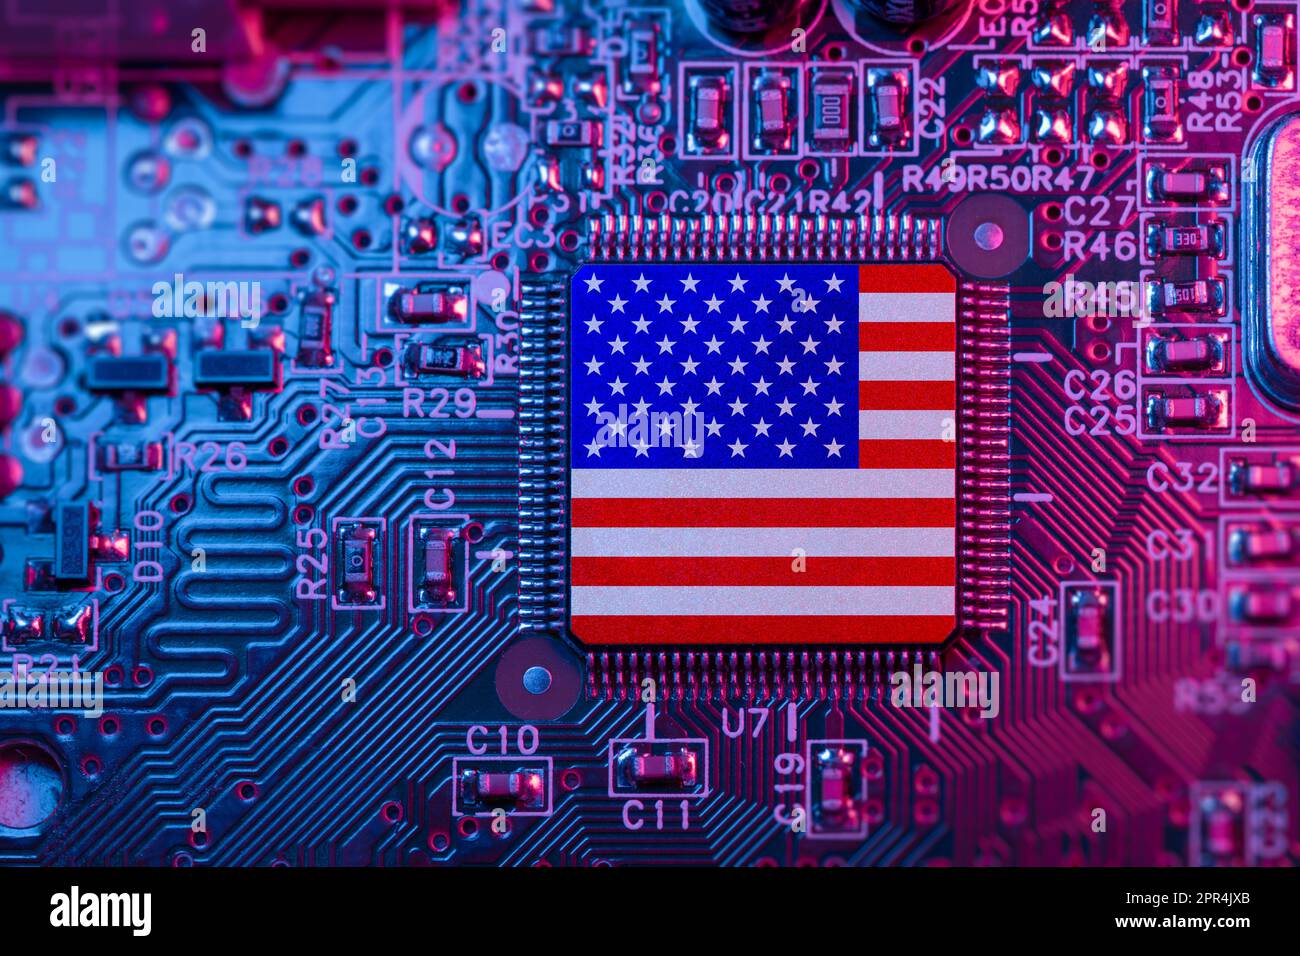 US-Flagge auf Computerchips für Chip war Concept. US-Chiphersteller weltweit. Microchip on Motherboard mit dem weltweit größten Chip-Hersteller und Anbieter in Amerika Stockfoto